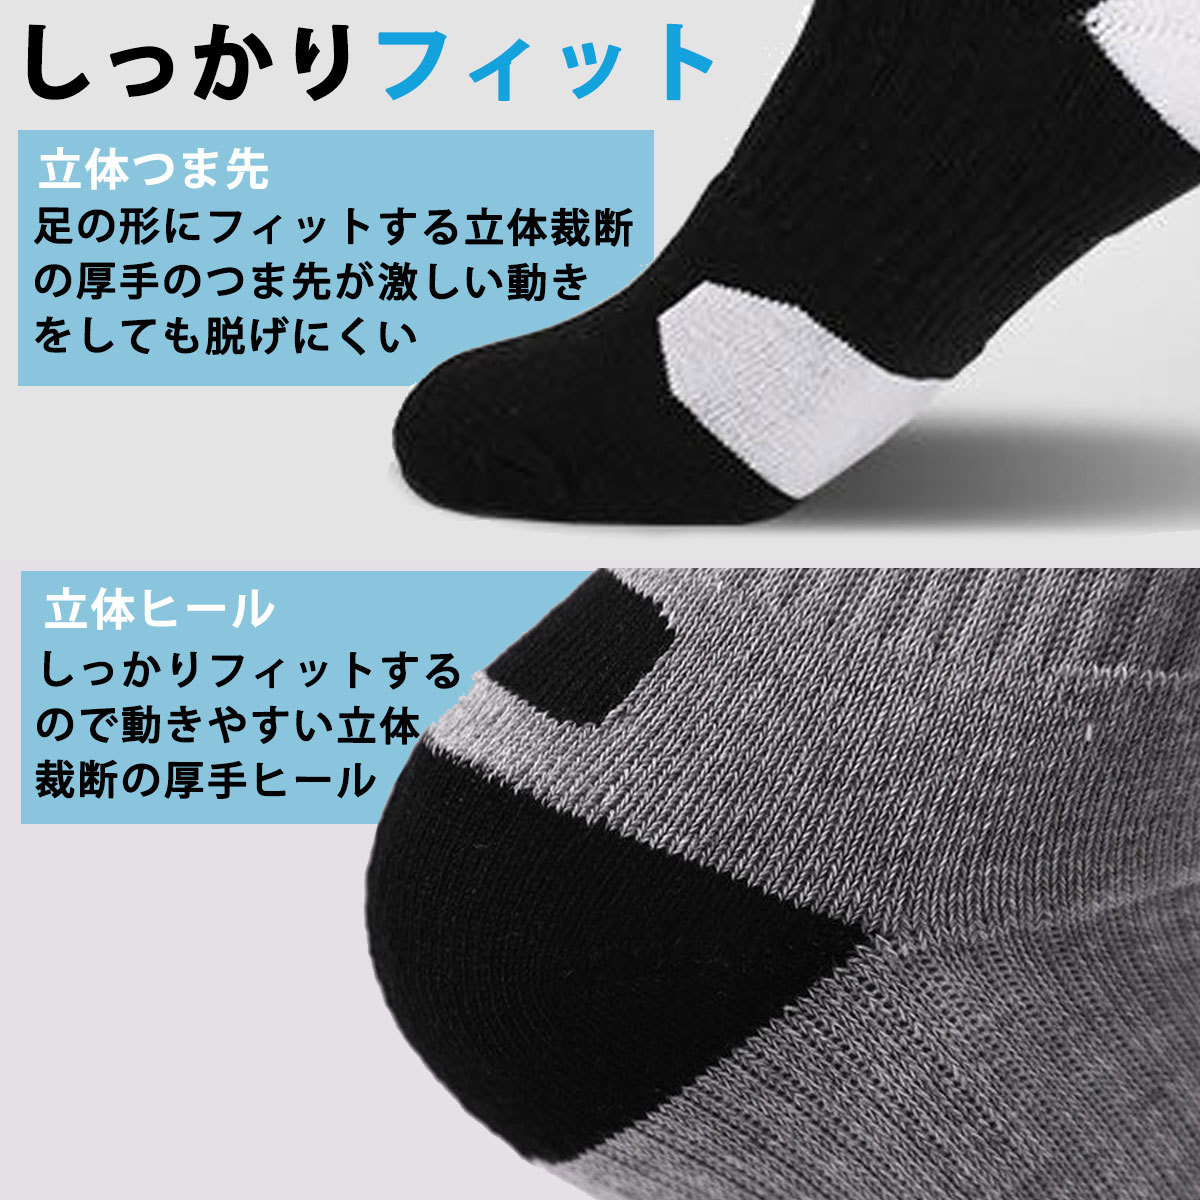  спорт носки 3 пар комплект мужской носки носки спорт Golf средний плотная ткань модный подарок подарок 